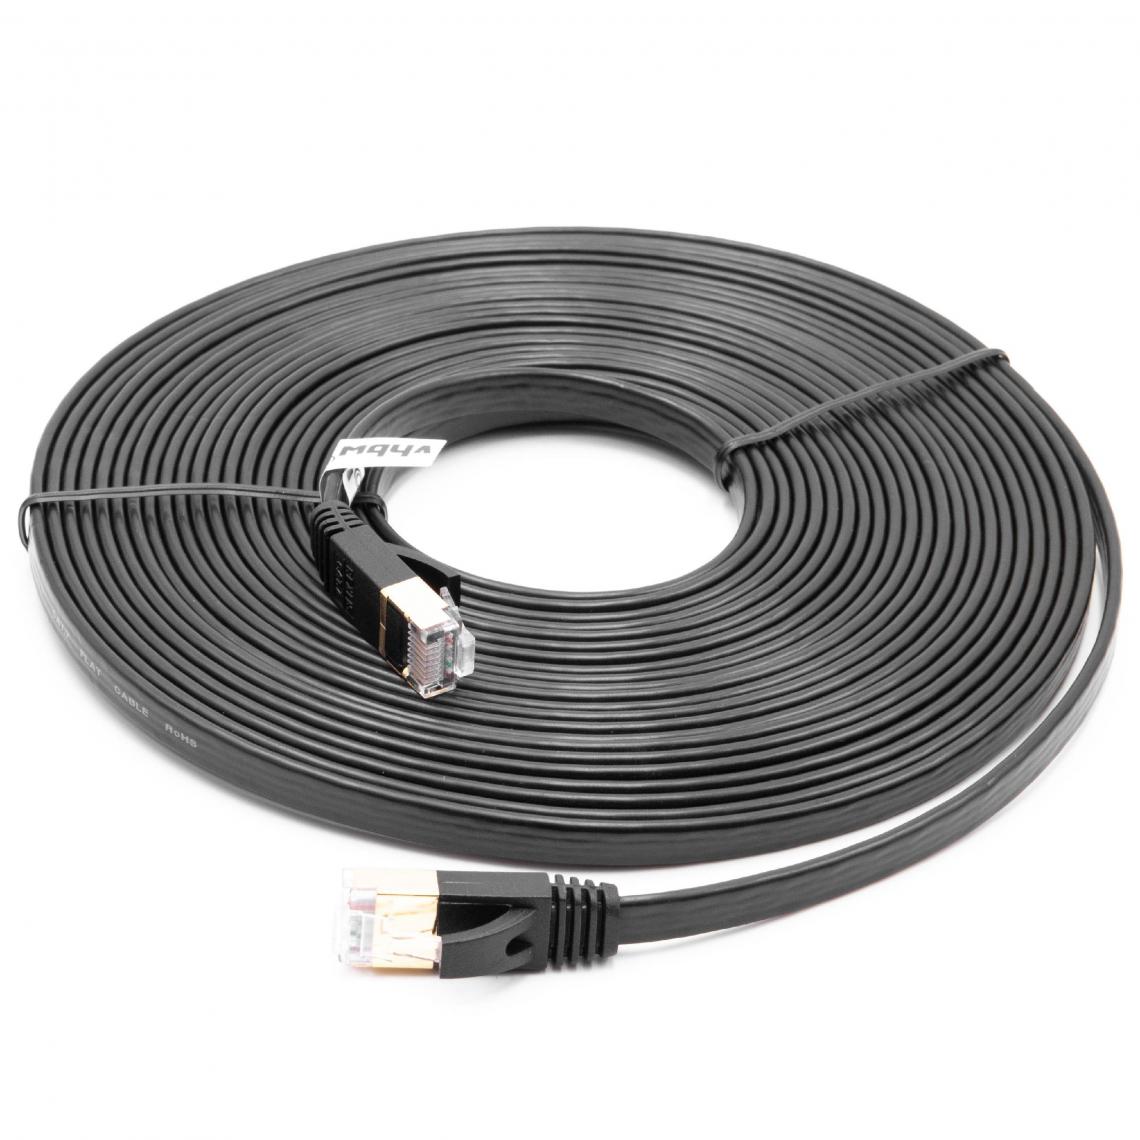 Vhbw - vhbw câble de réseau câble LAN Cat7 8m noir câble plat - Accessoires alimentation